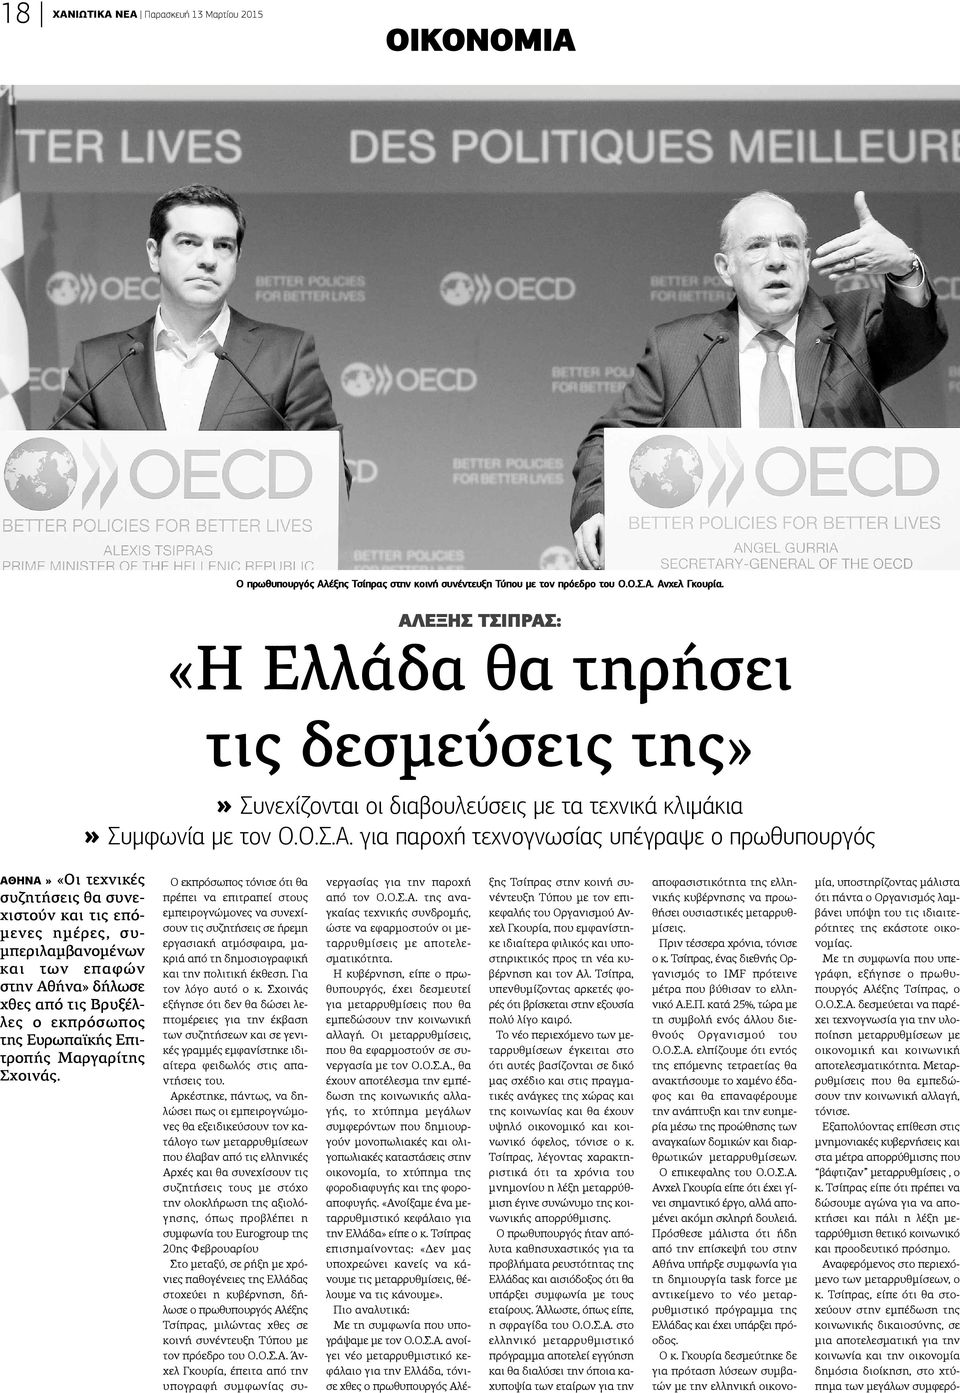 τεχνικές συζητήσεις θα συνεχιστούν και τις επόμενες ημέρες, συπεριλαμβανομένων αι των επαφών την Αθήνα» δήλωσε θες από τις Βρυξέλες ο εκπρόσωπος ης Ευρωπαϊκής Επιροπής Μαργαρίτης χοινάς.